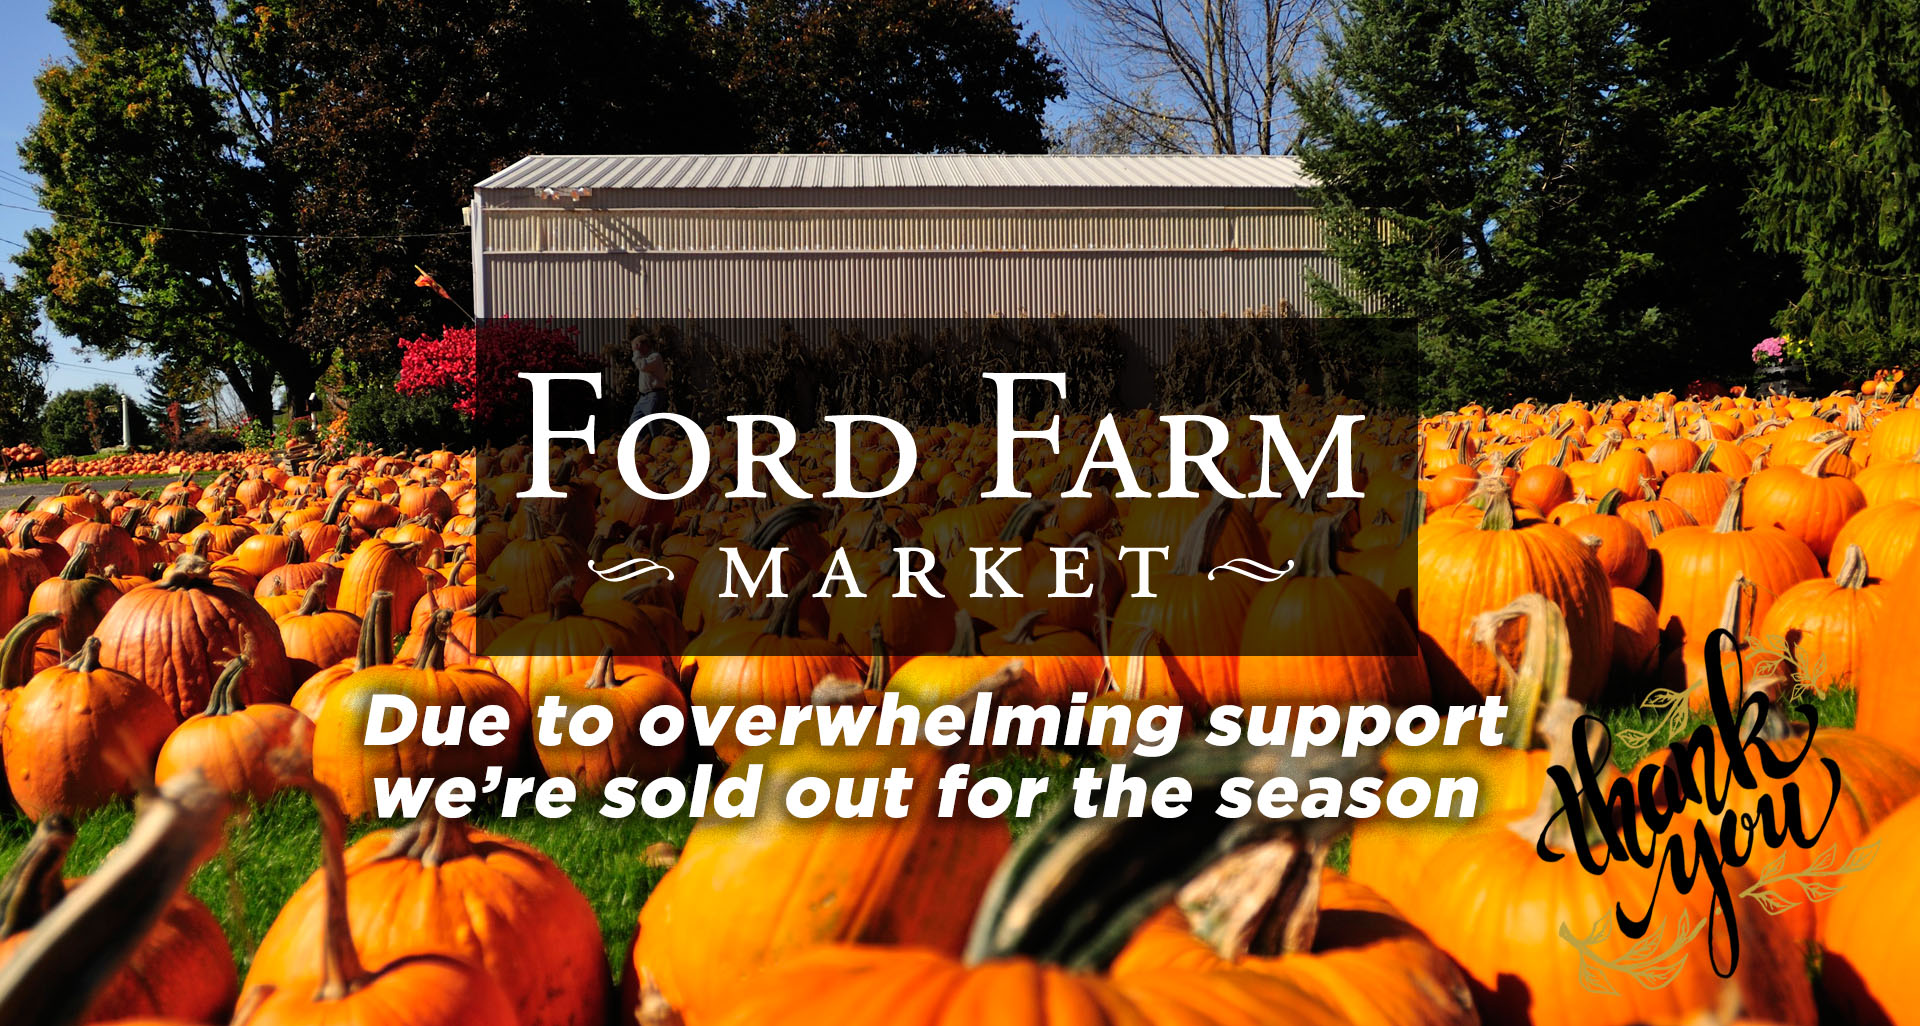 Ford Farm Market